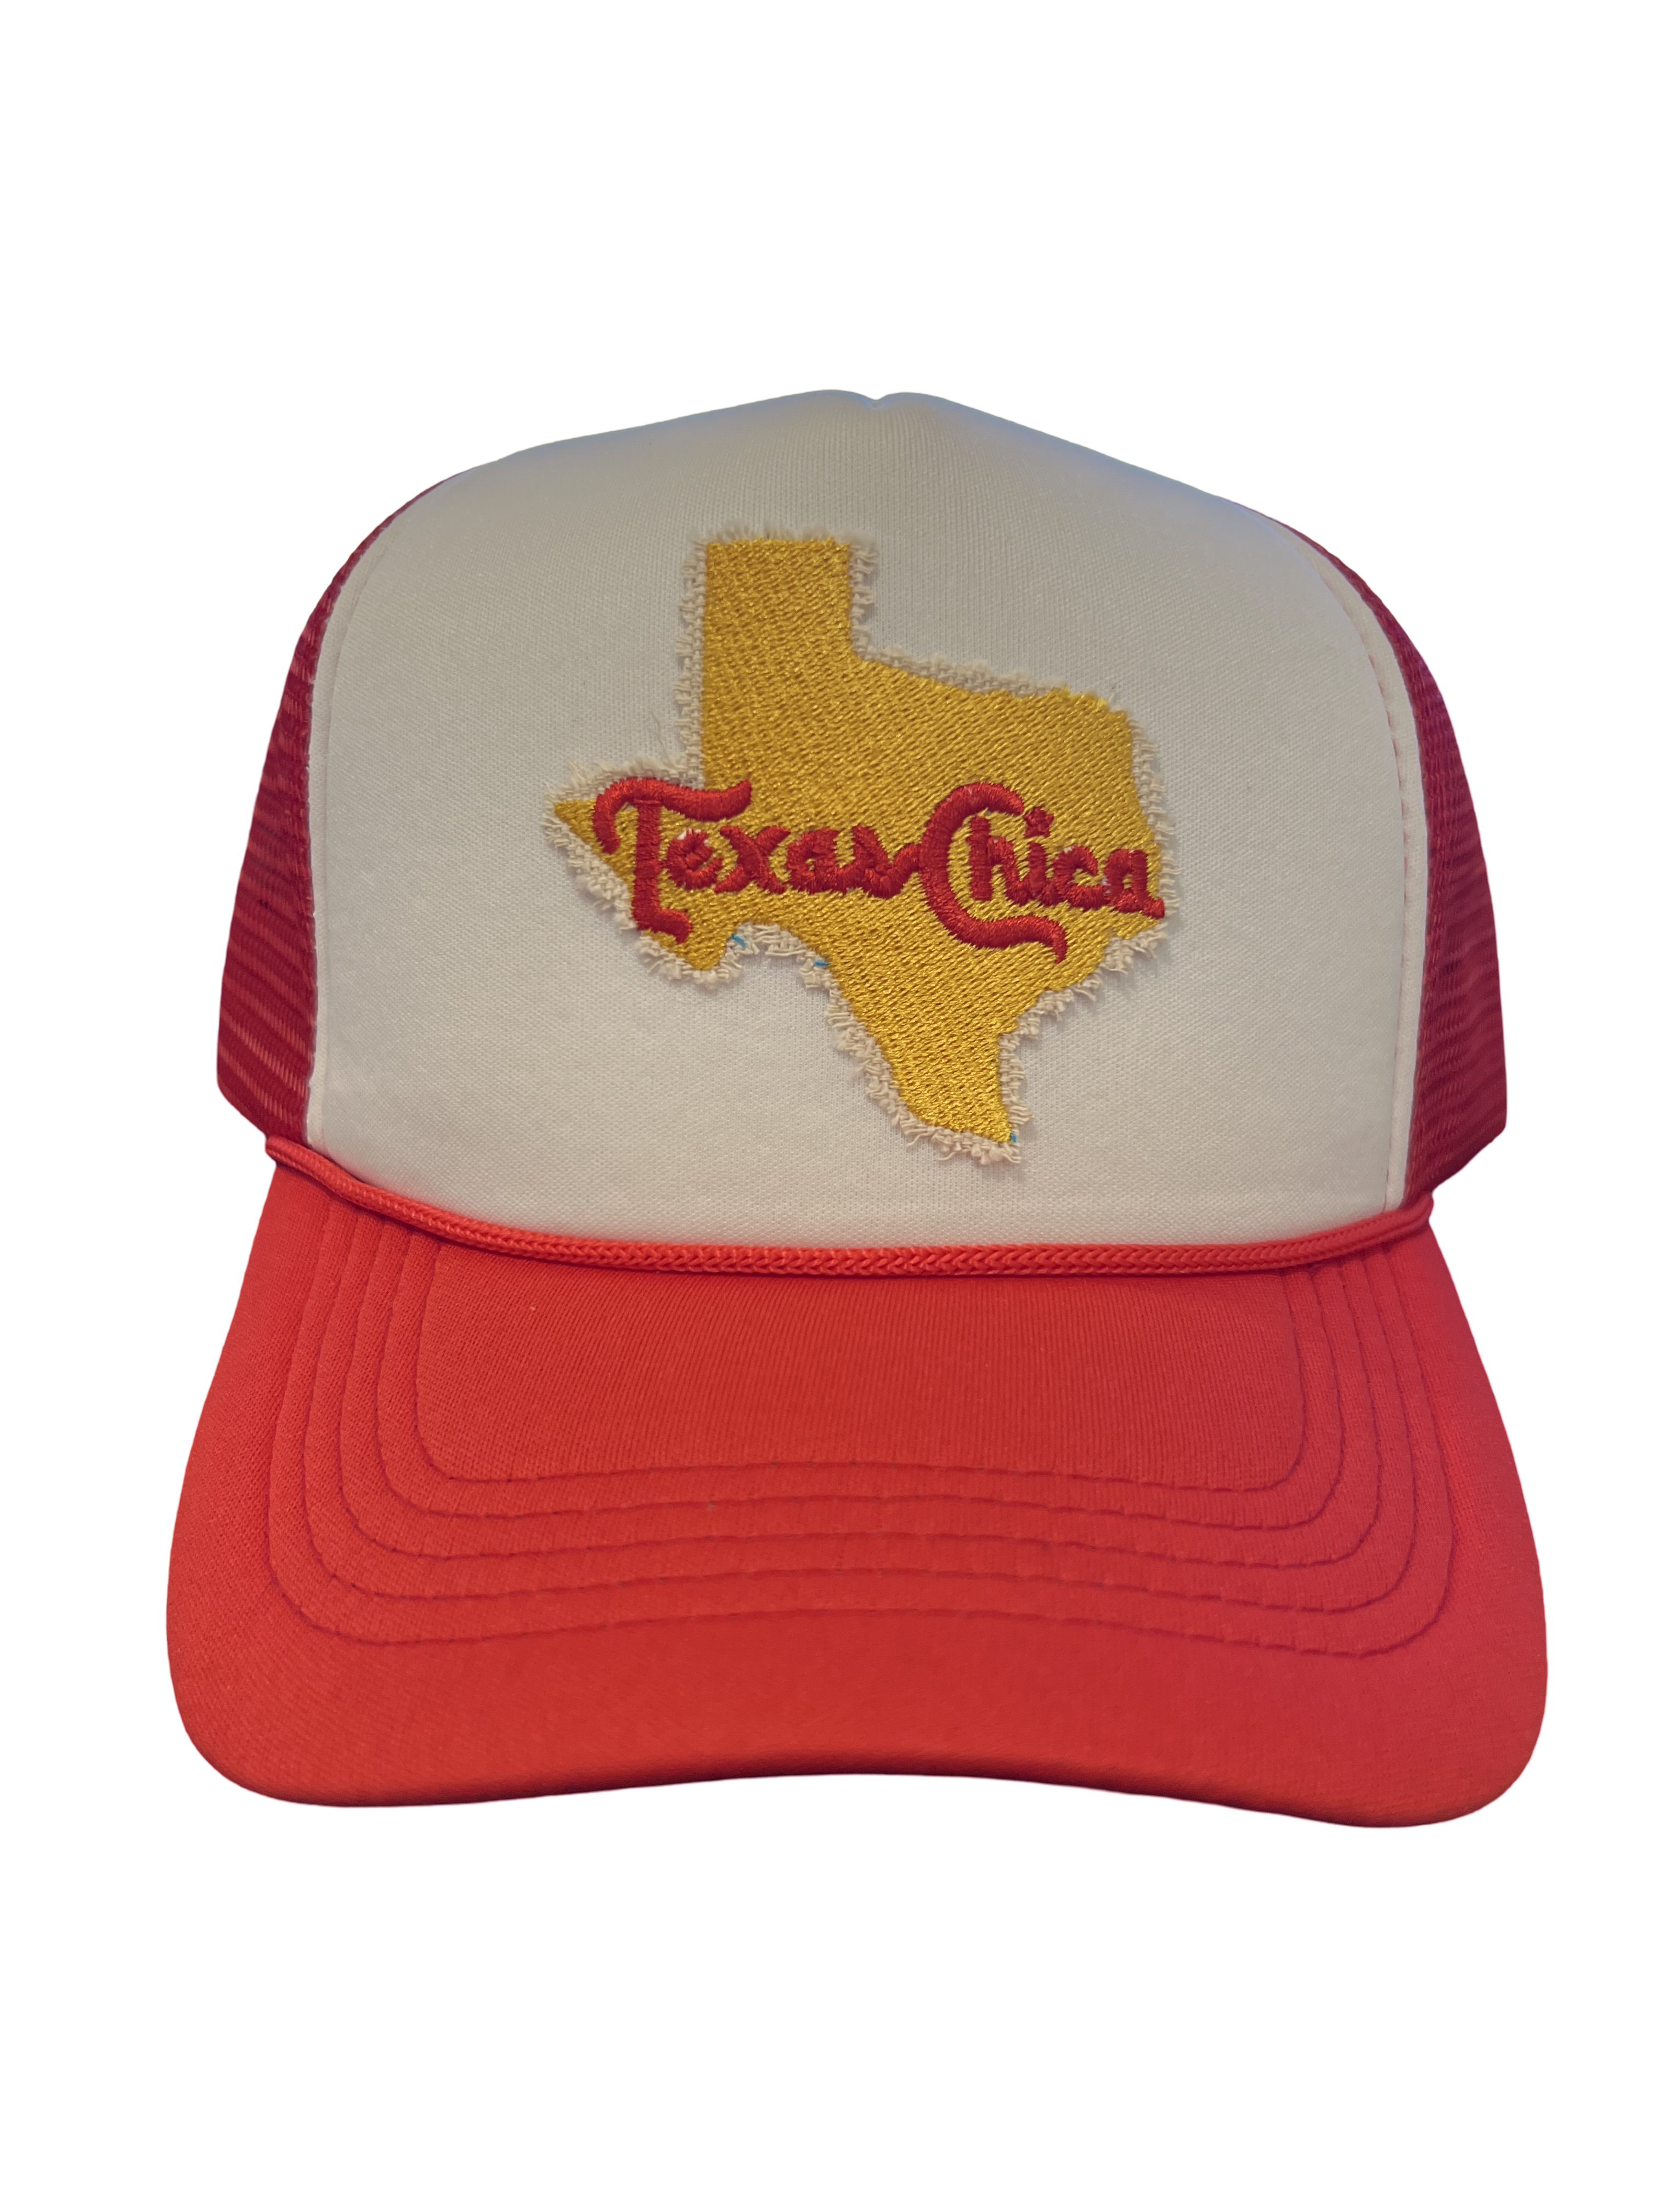 Foam Trucker Hat "Texas Chica"